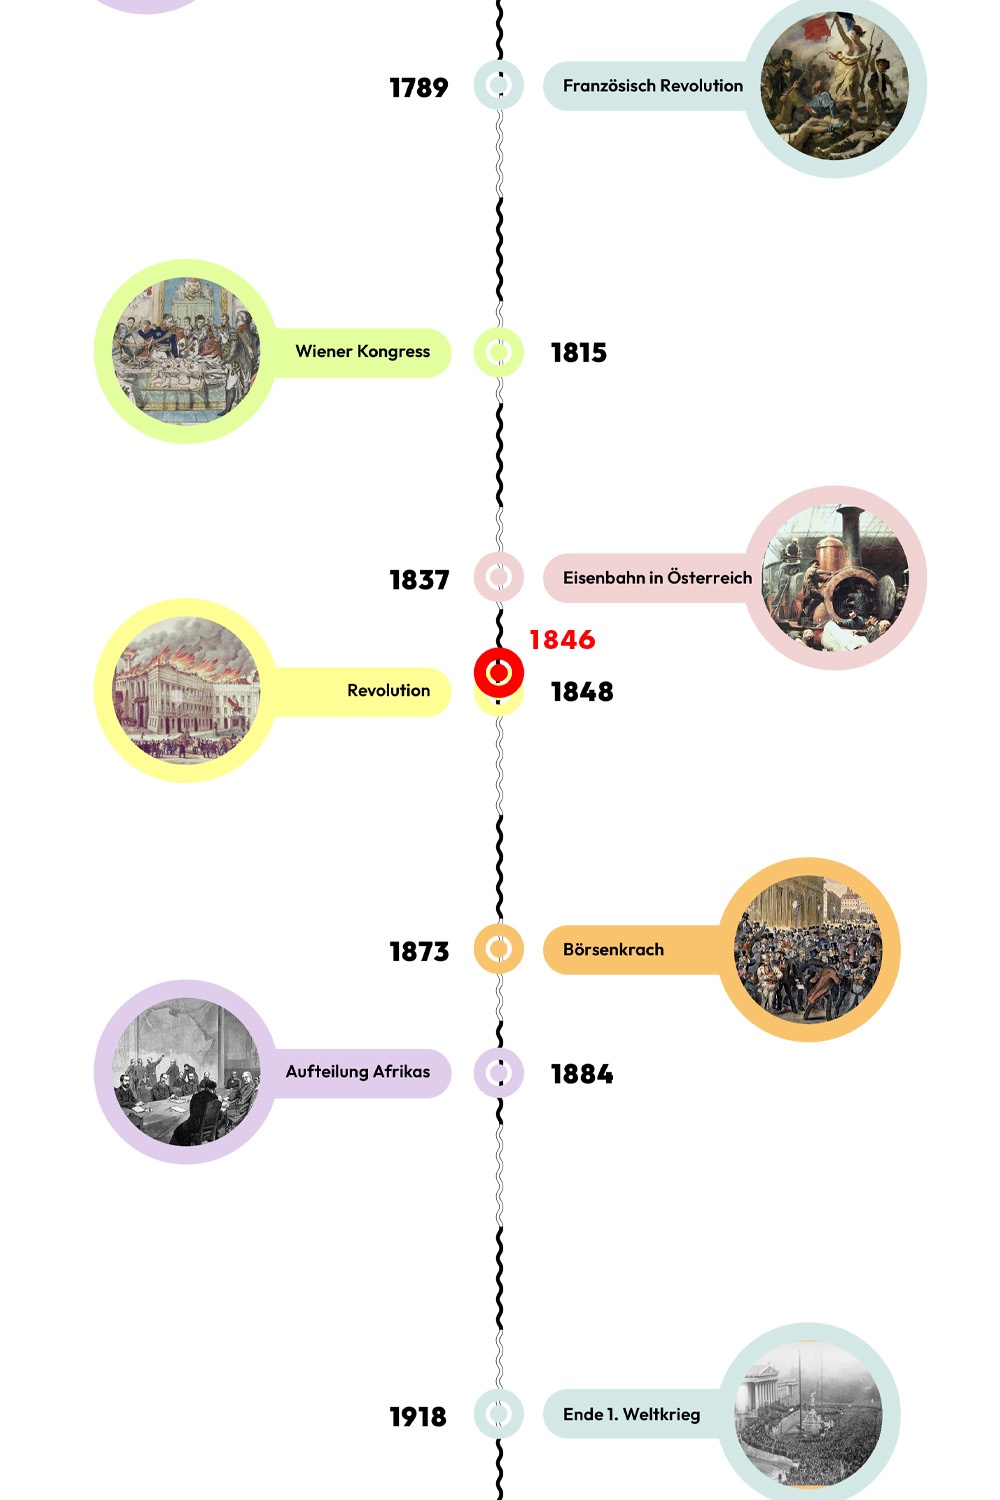 Zeitstrahl mit historischen Ereignissen - 1846 ist hervorgehoben. © wasbishergeschah.at